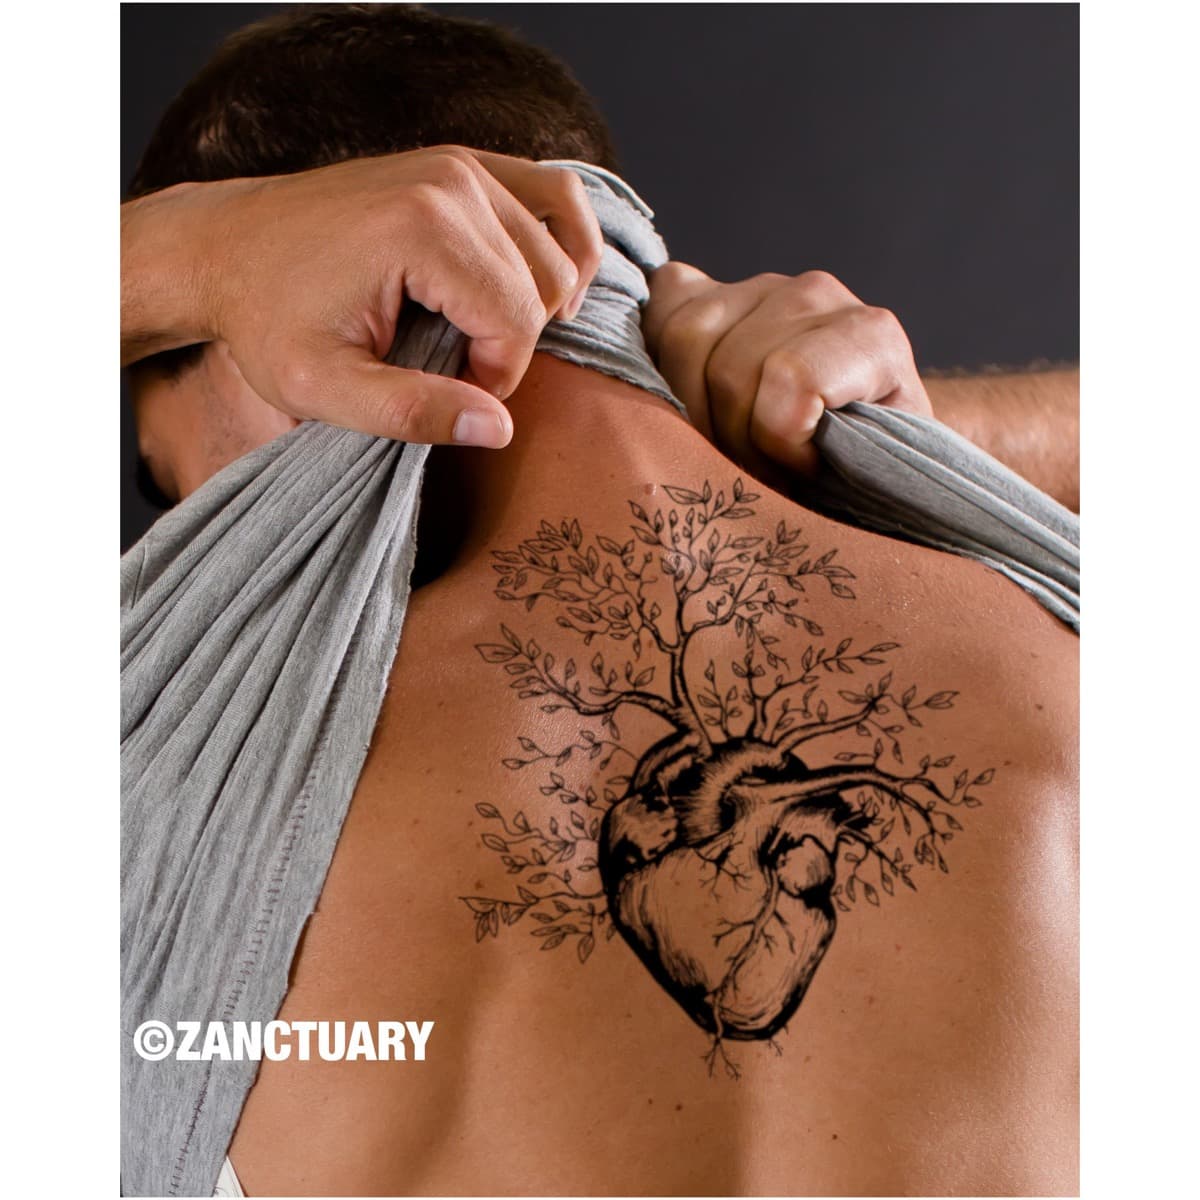 Tatuaggio cuore schiena